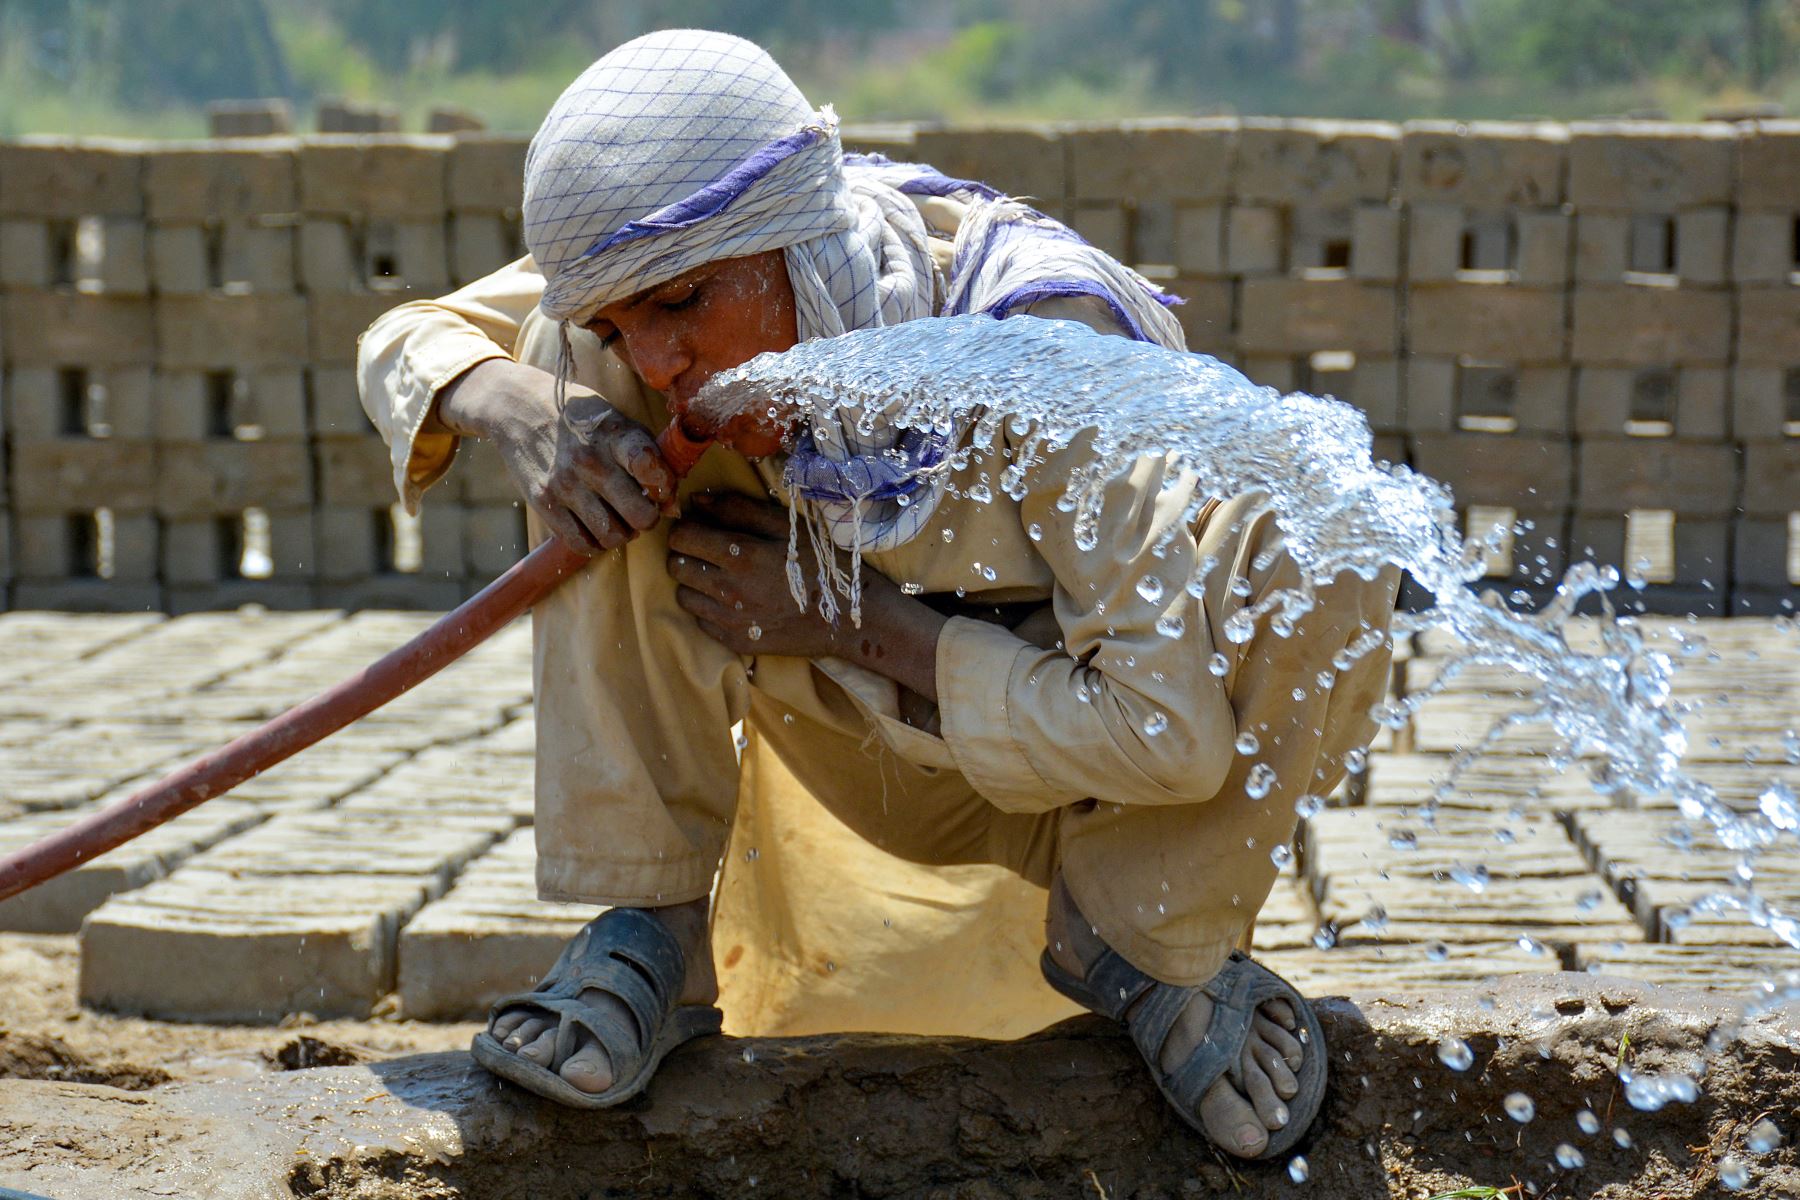 Un trabajador bebe agua de una tubería en un horno de ladrillos durante un caluroso día de verano en Sukkur, provincia de Sindh. El Departamento Meteorológico de Pakistán dijo que se espera que las temperaturas alcancen los 50 grados Celsius en algunas partes. de las zonas rurales de Sindh. Foto: AFP